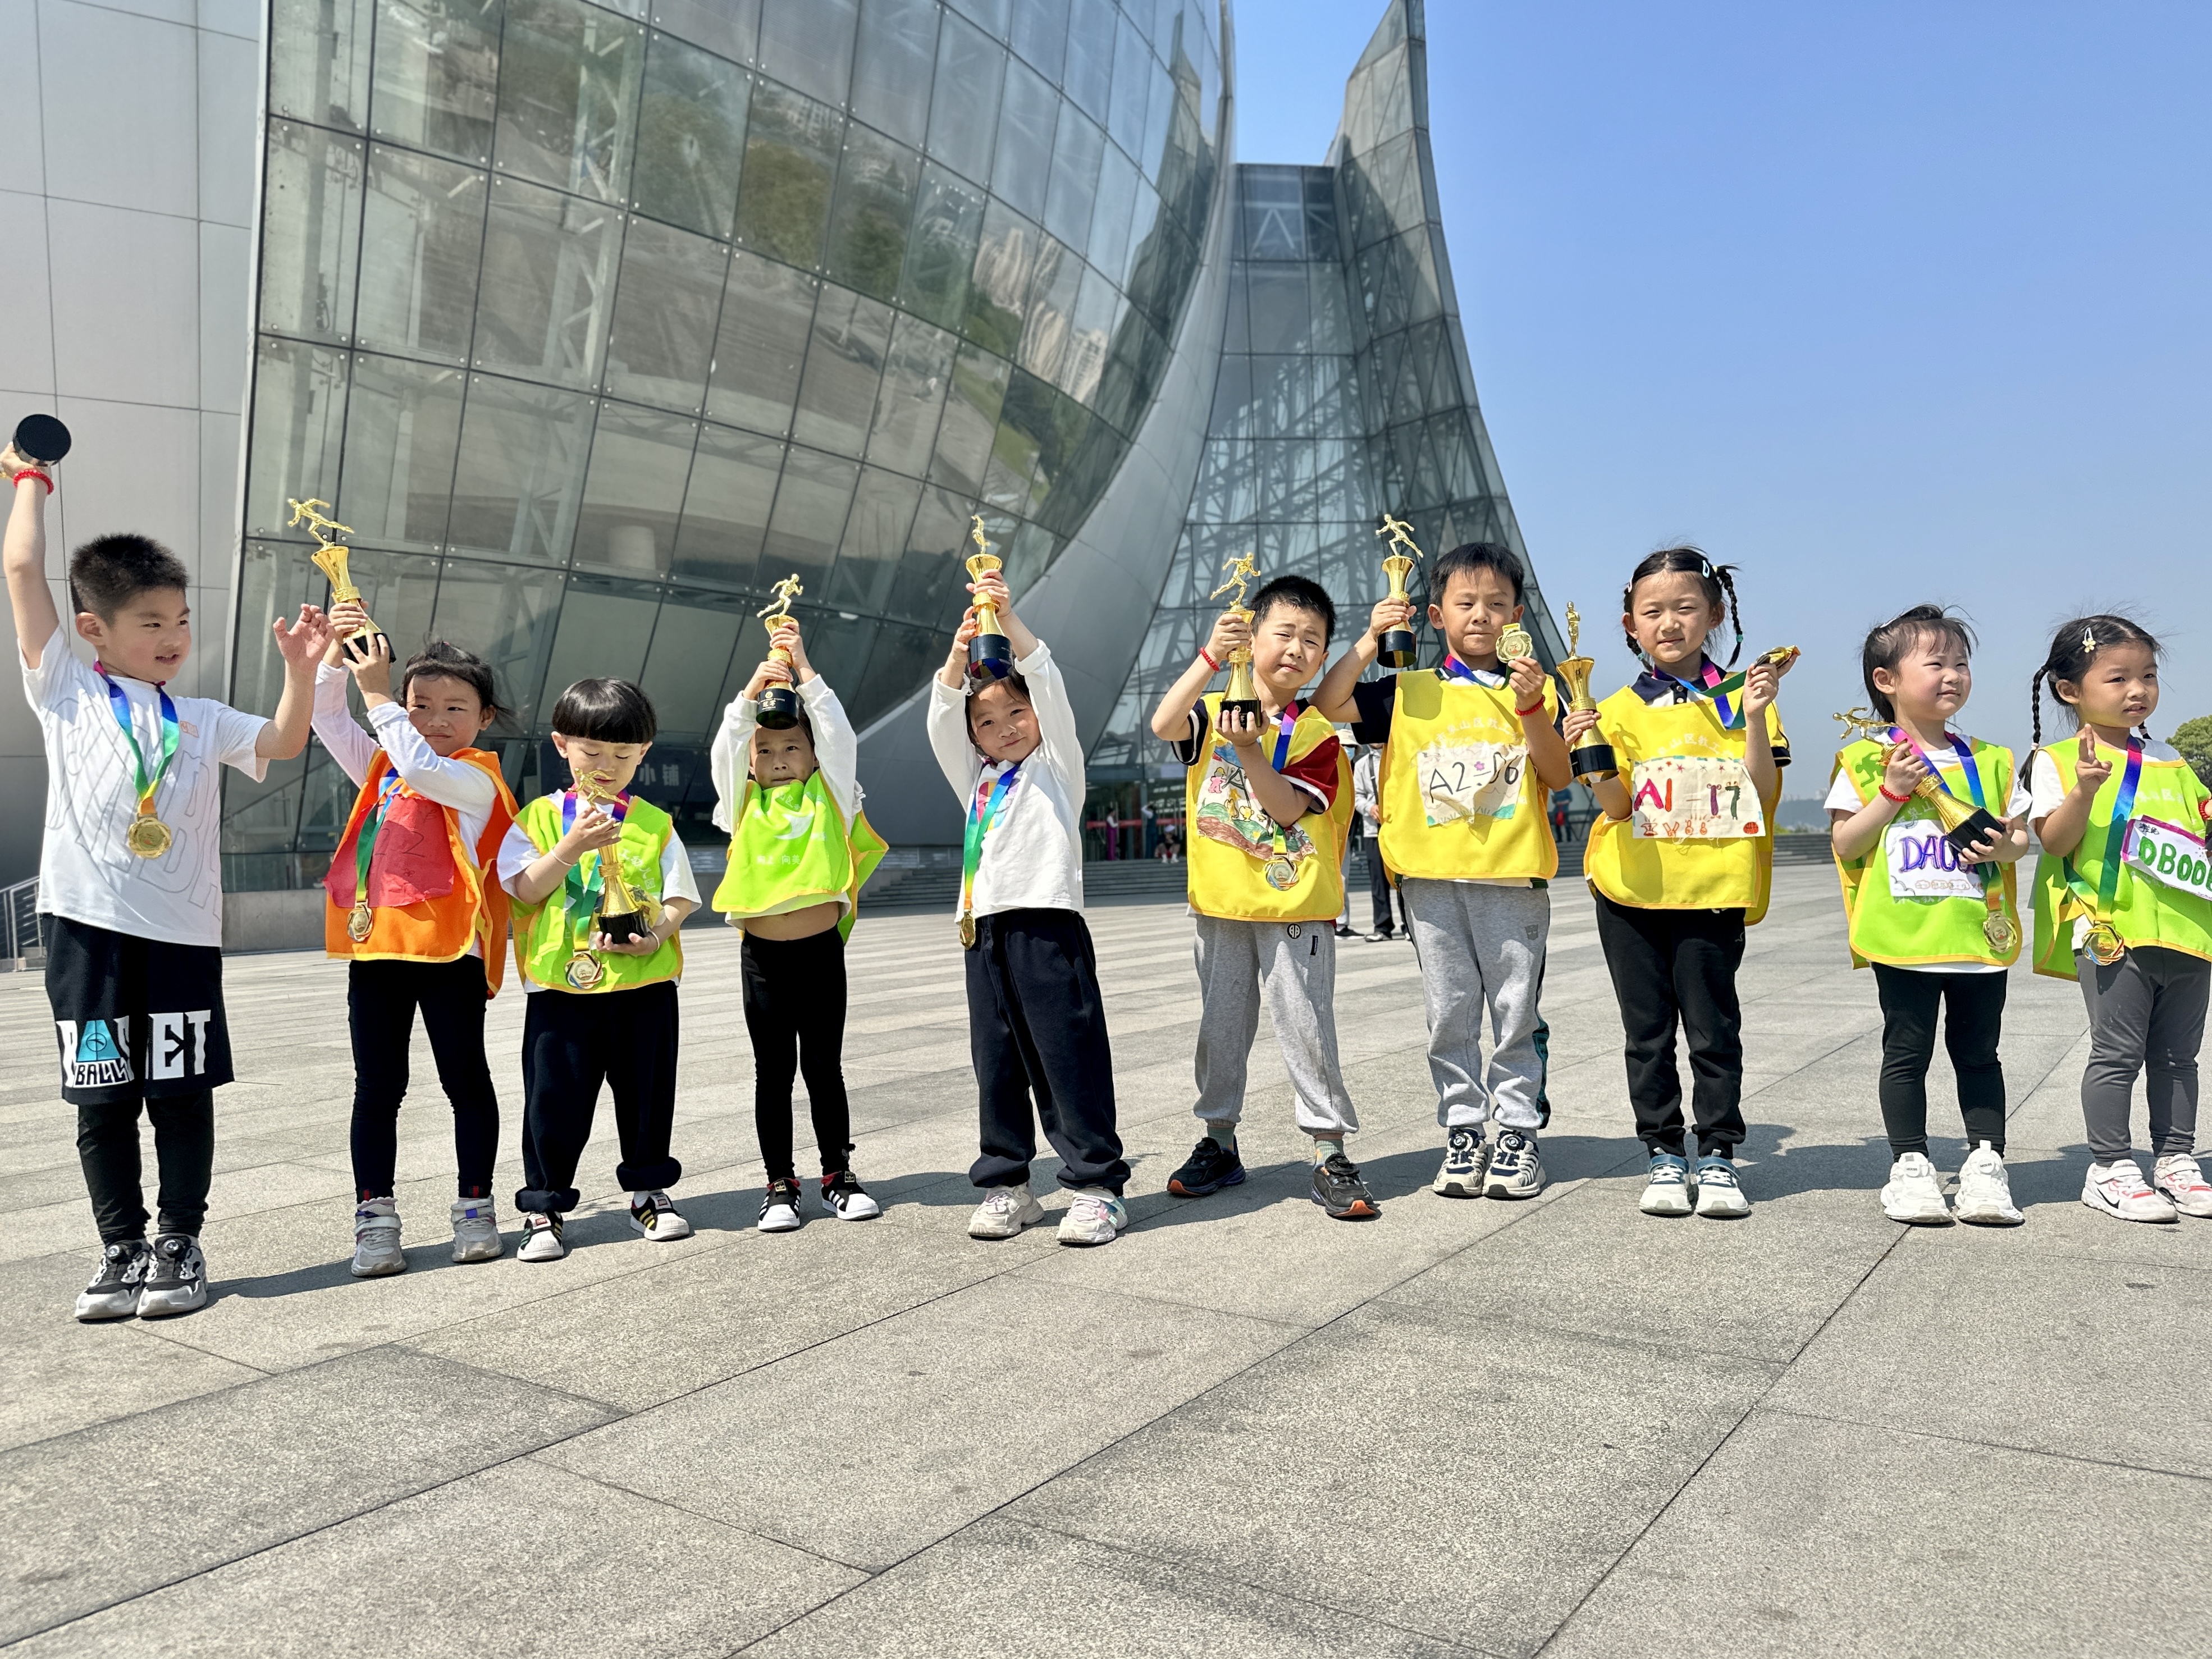 徐州泉山区举办教工幼第五届亲子mini马拉松活动